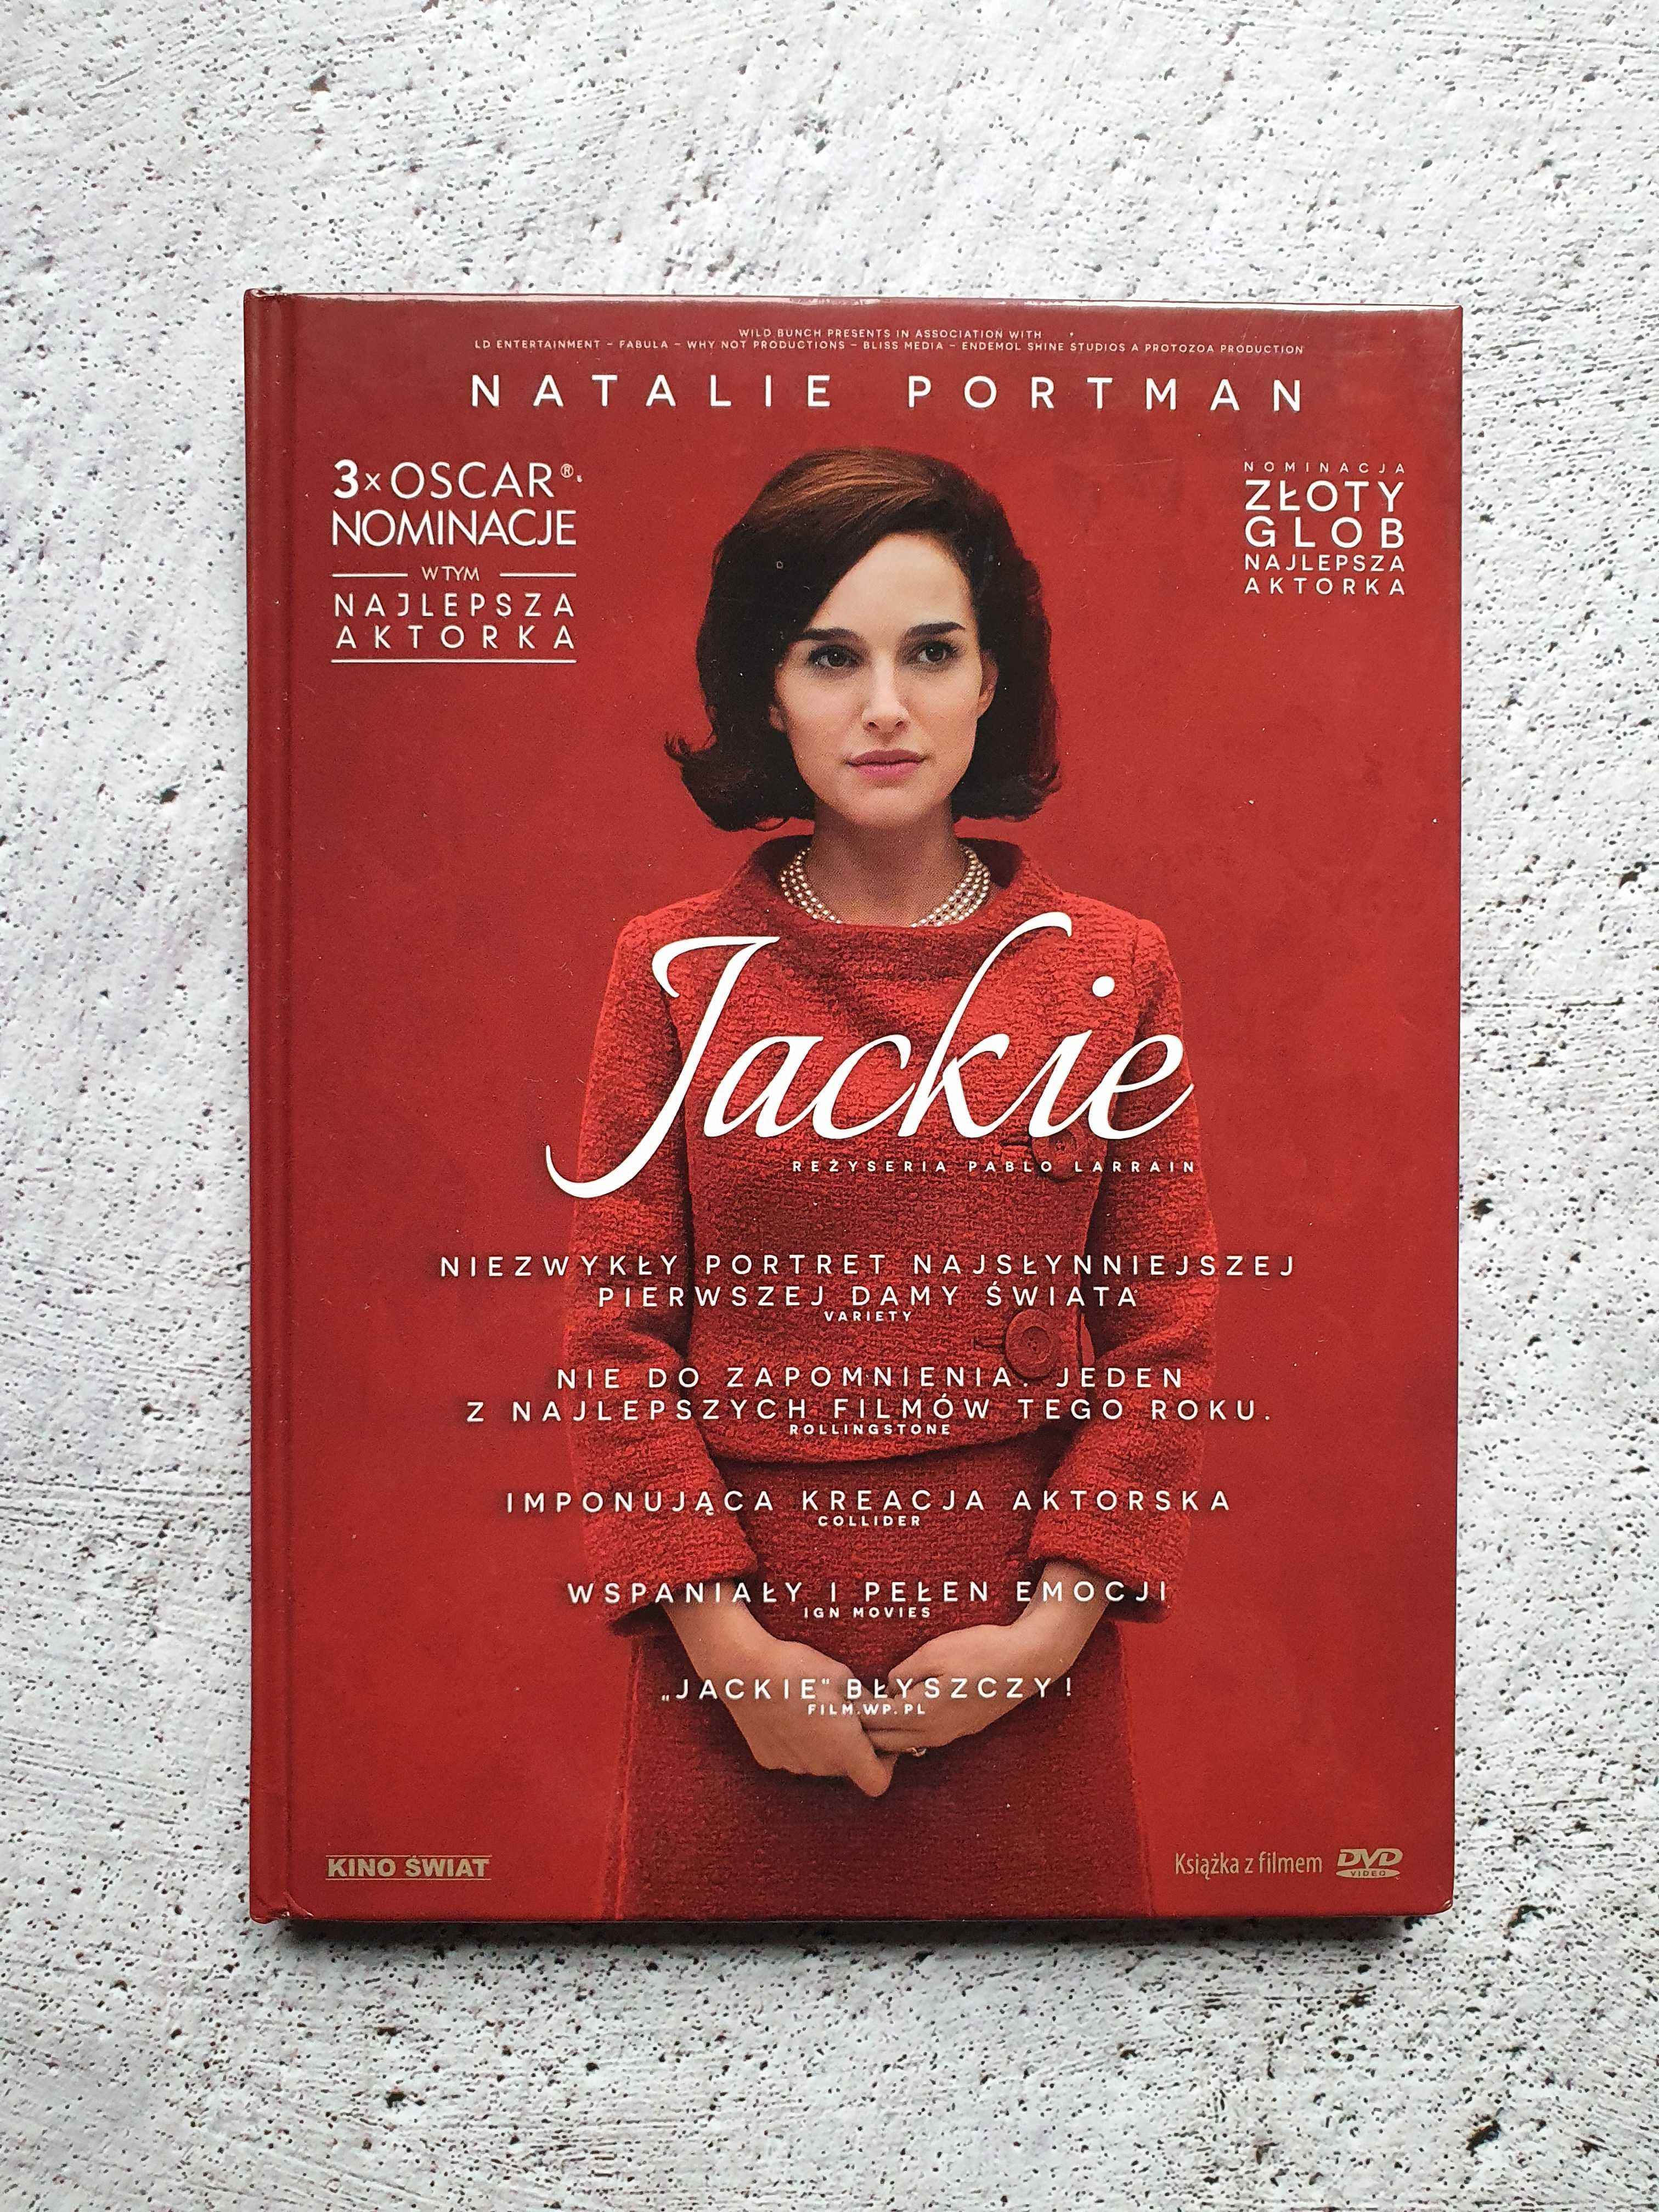 Jackie - Film DVD z "książką" - Jacqueline Kennedy - Natalie Portman